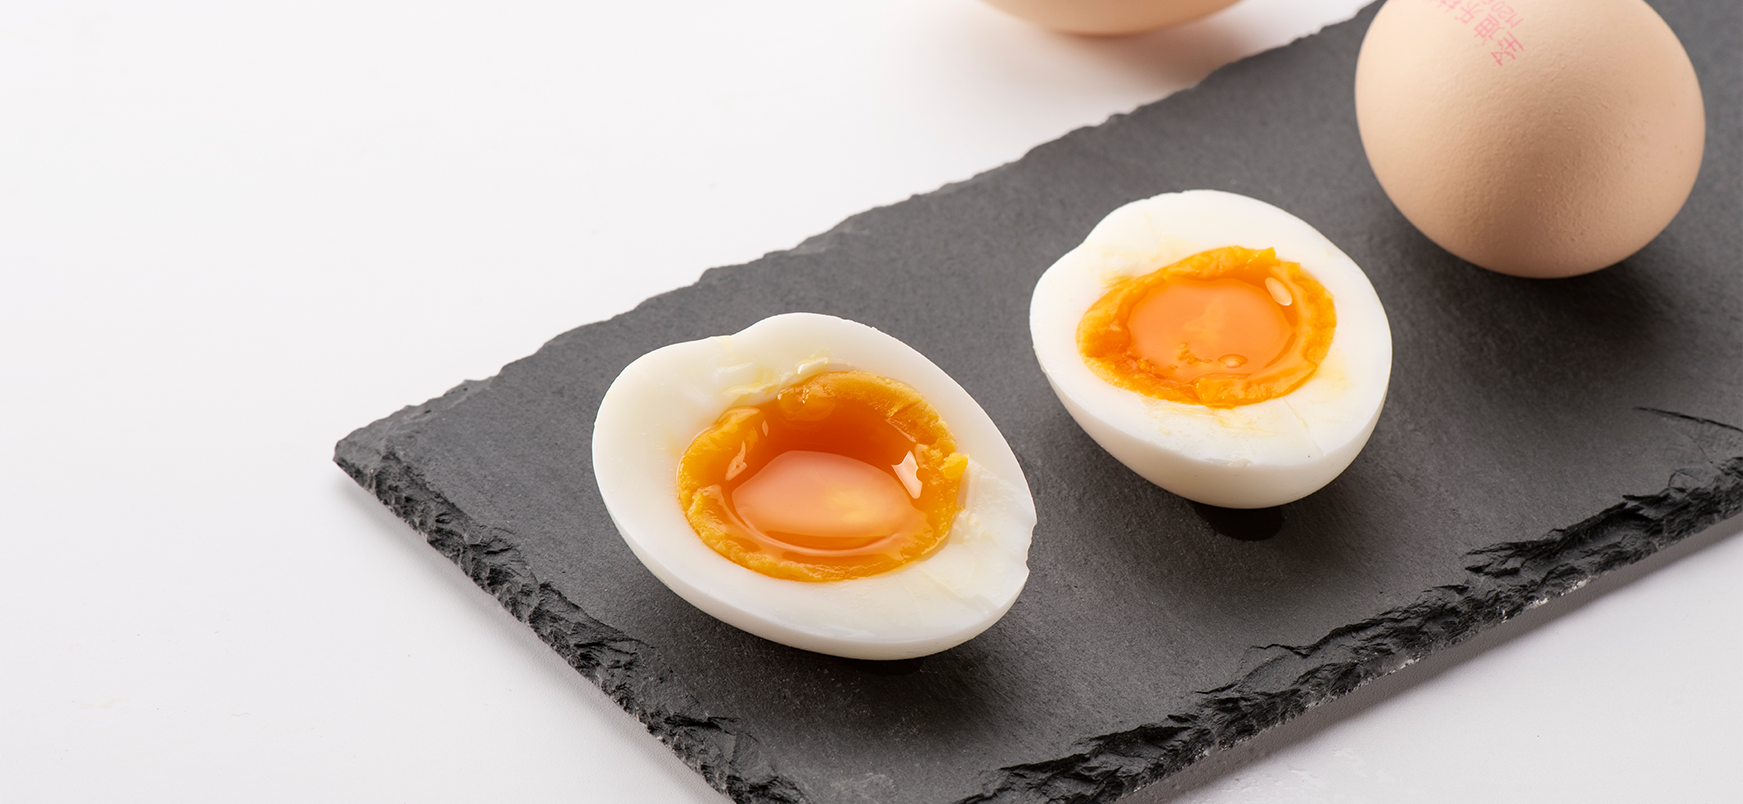 我们专注于高品质鸡蛋